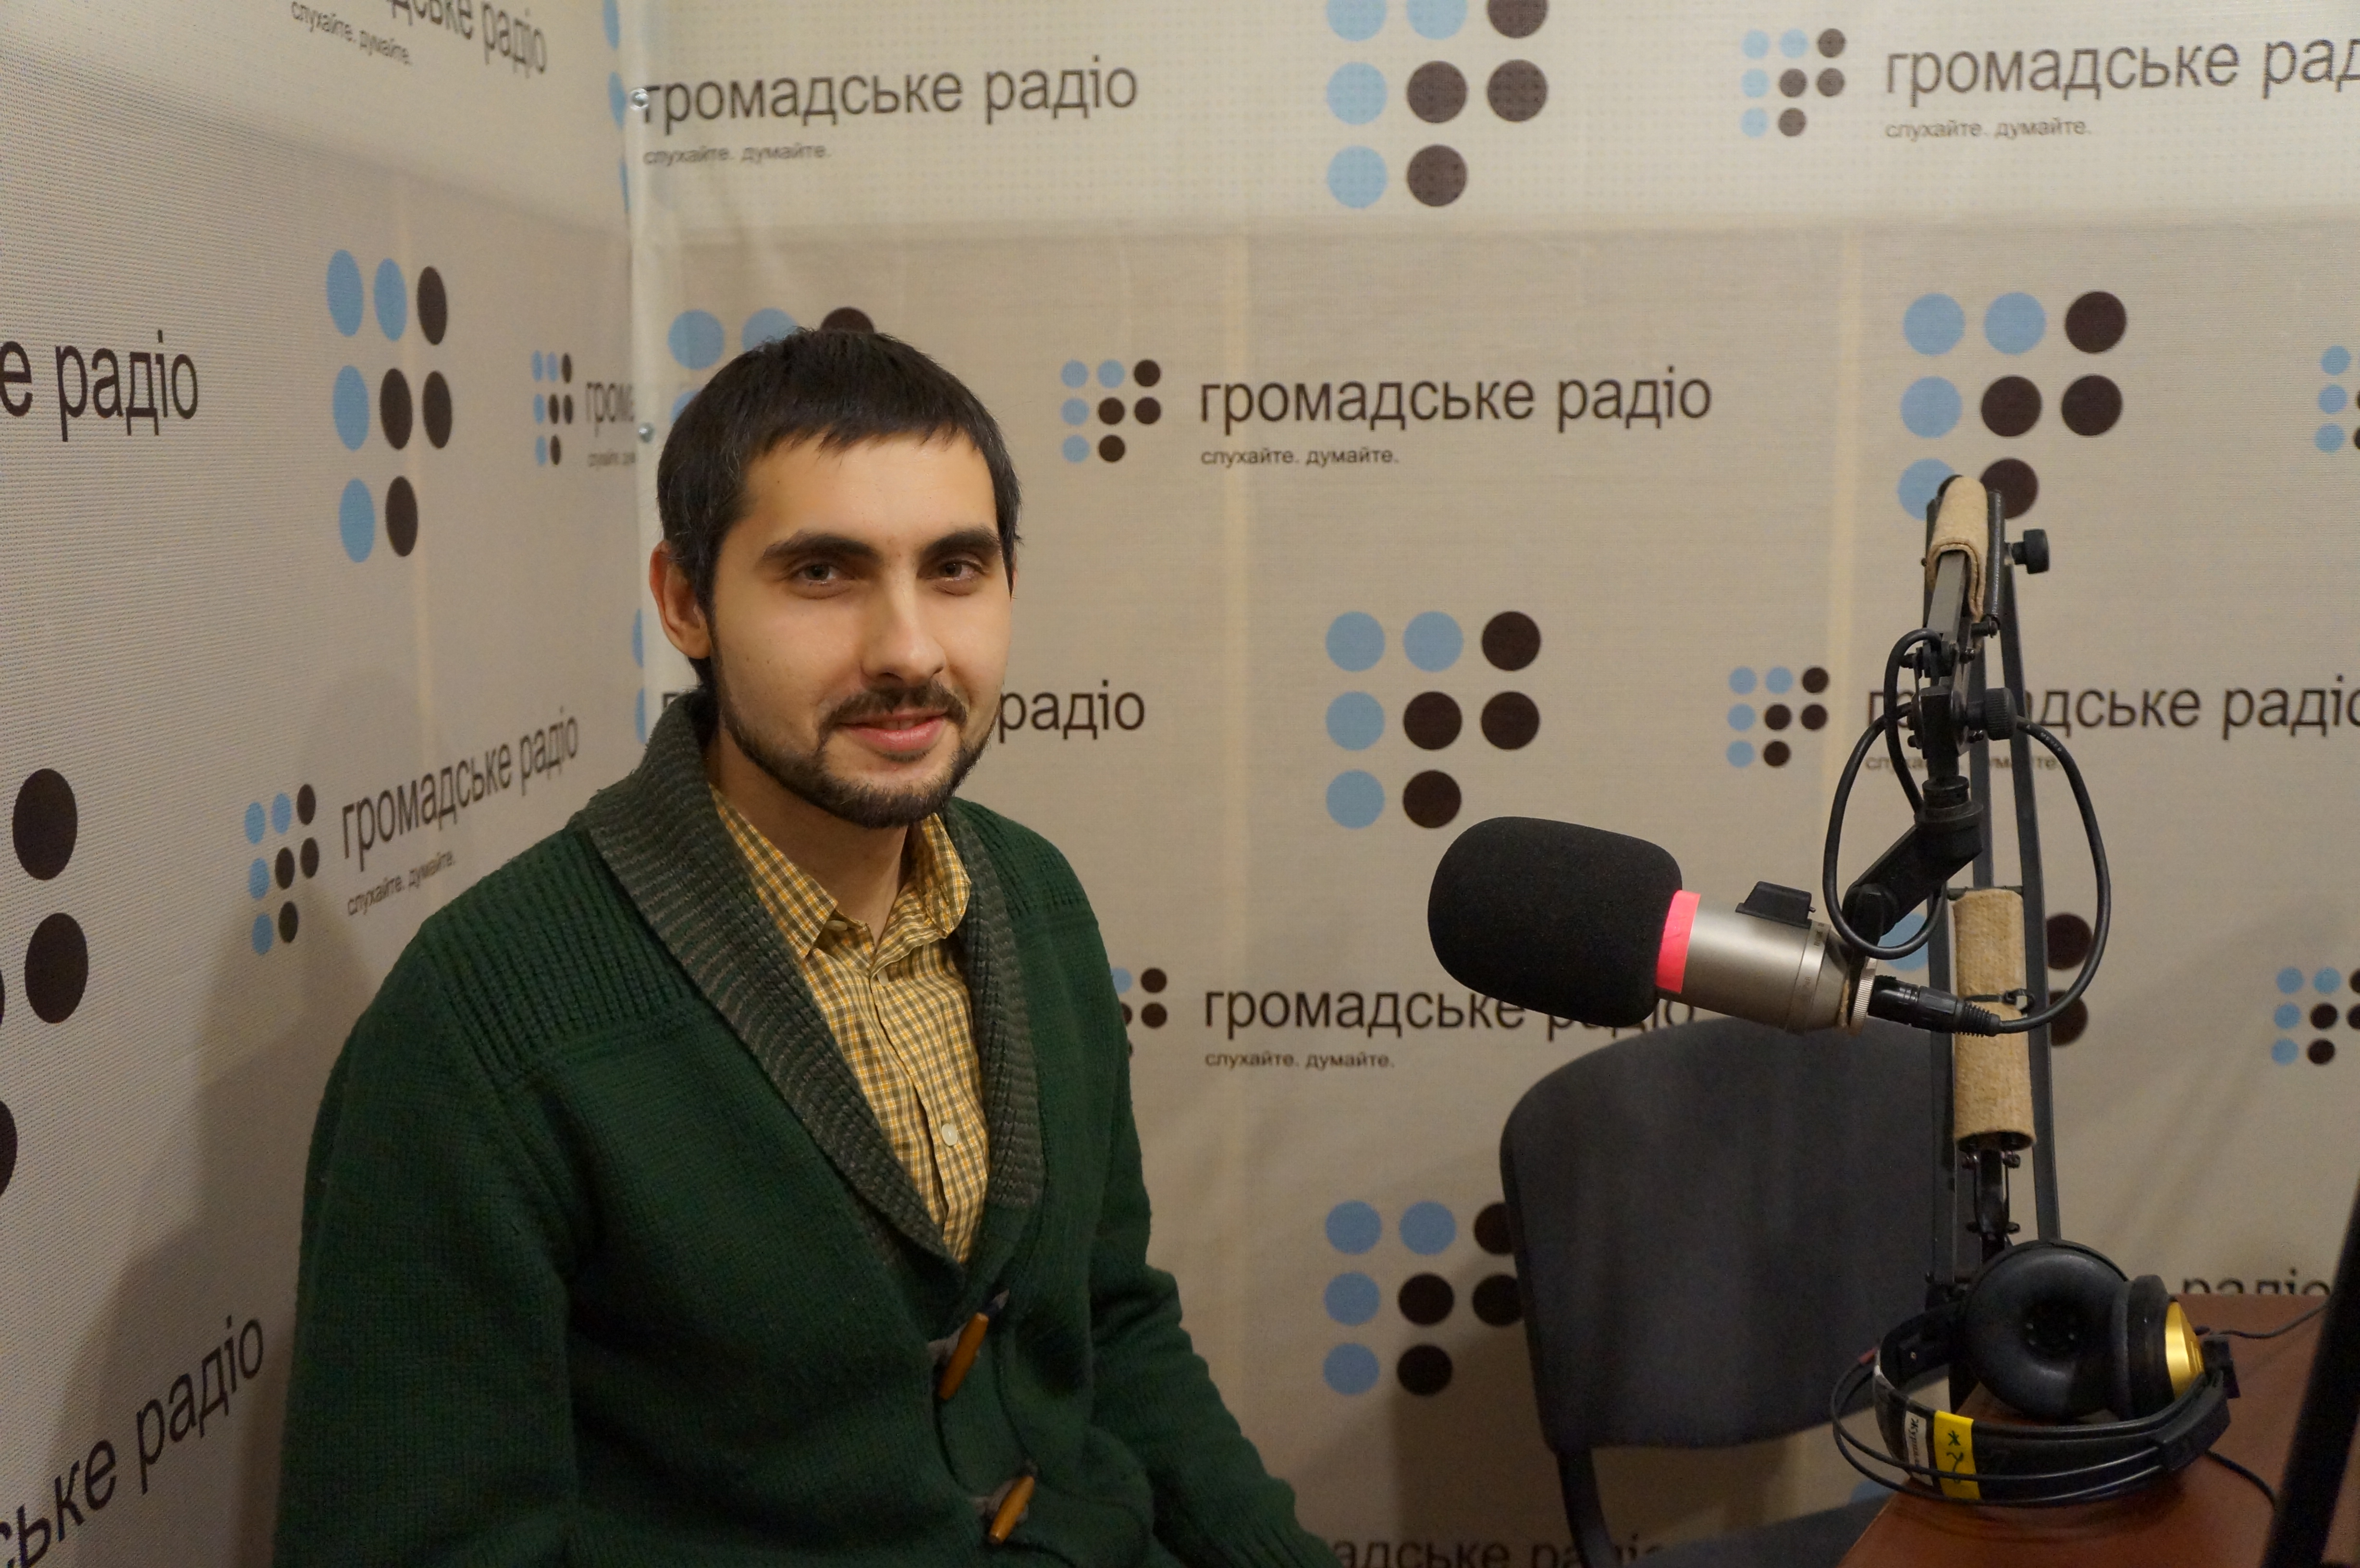 «Бандеровцев» во Львове я не встречал, — донецкий журналист